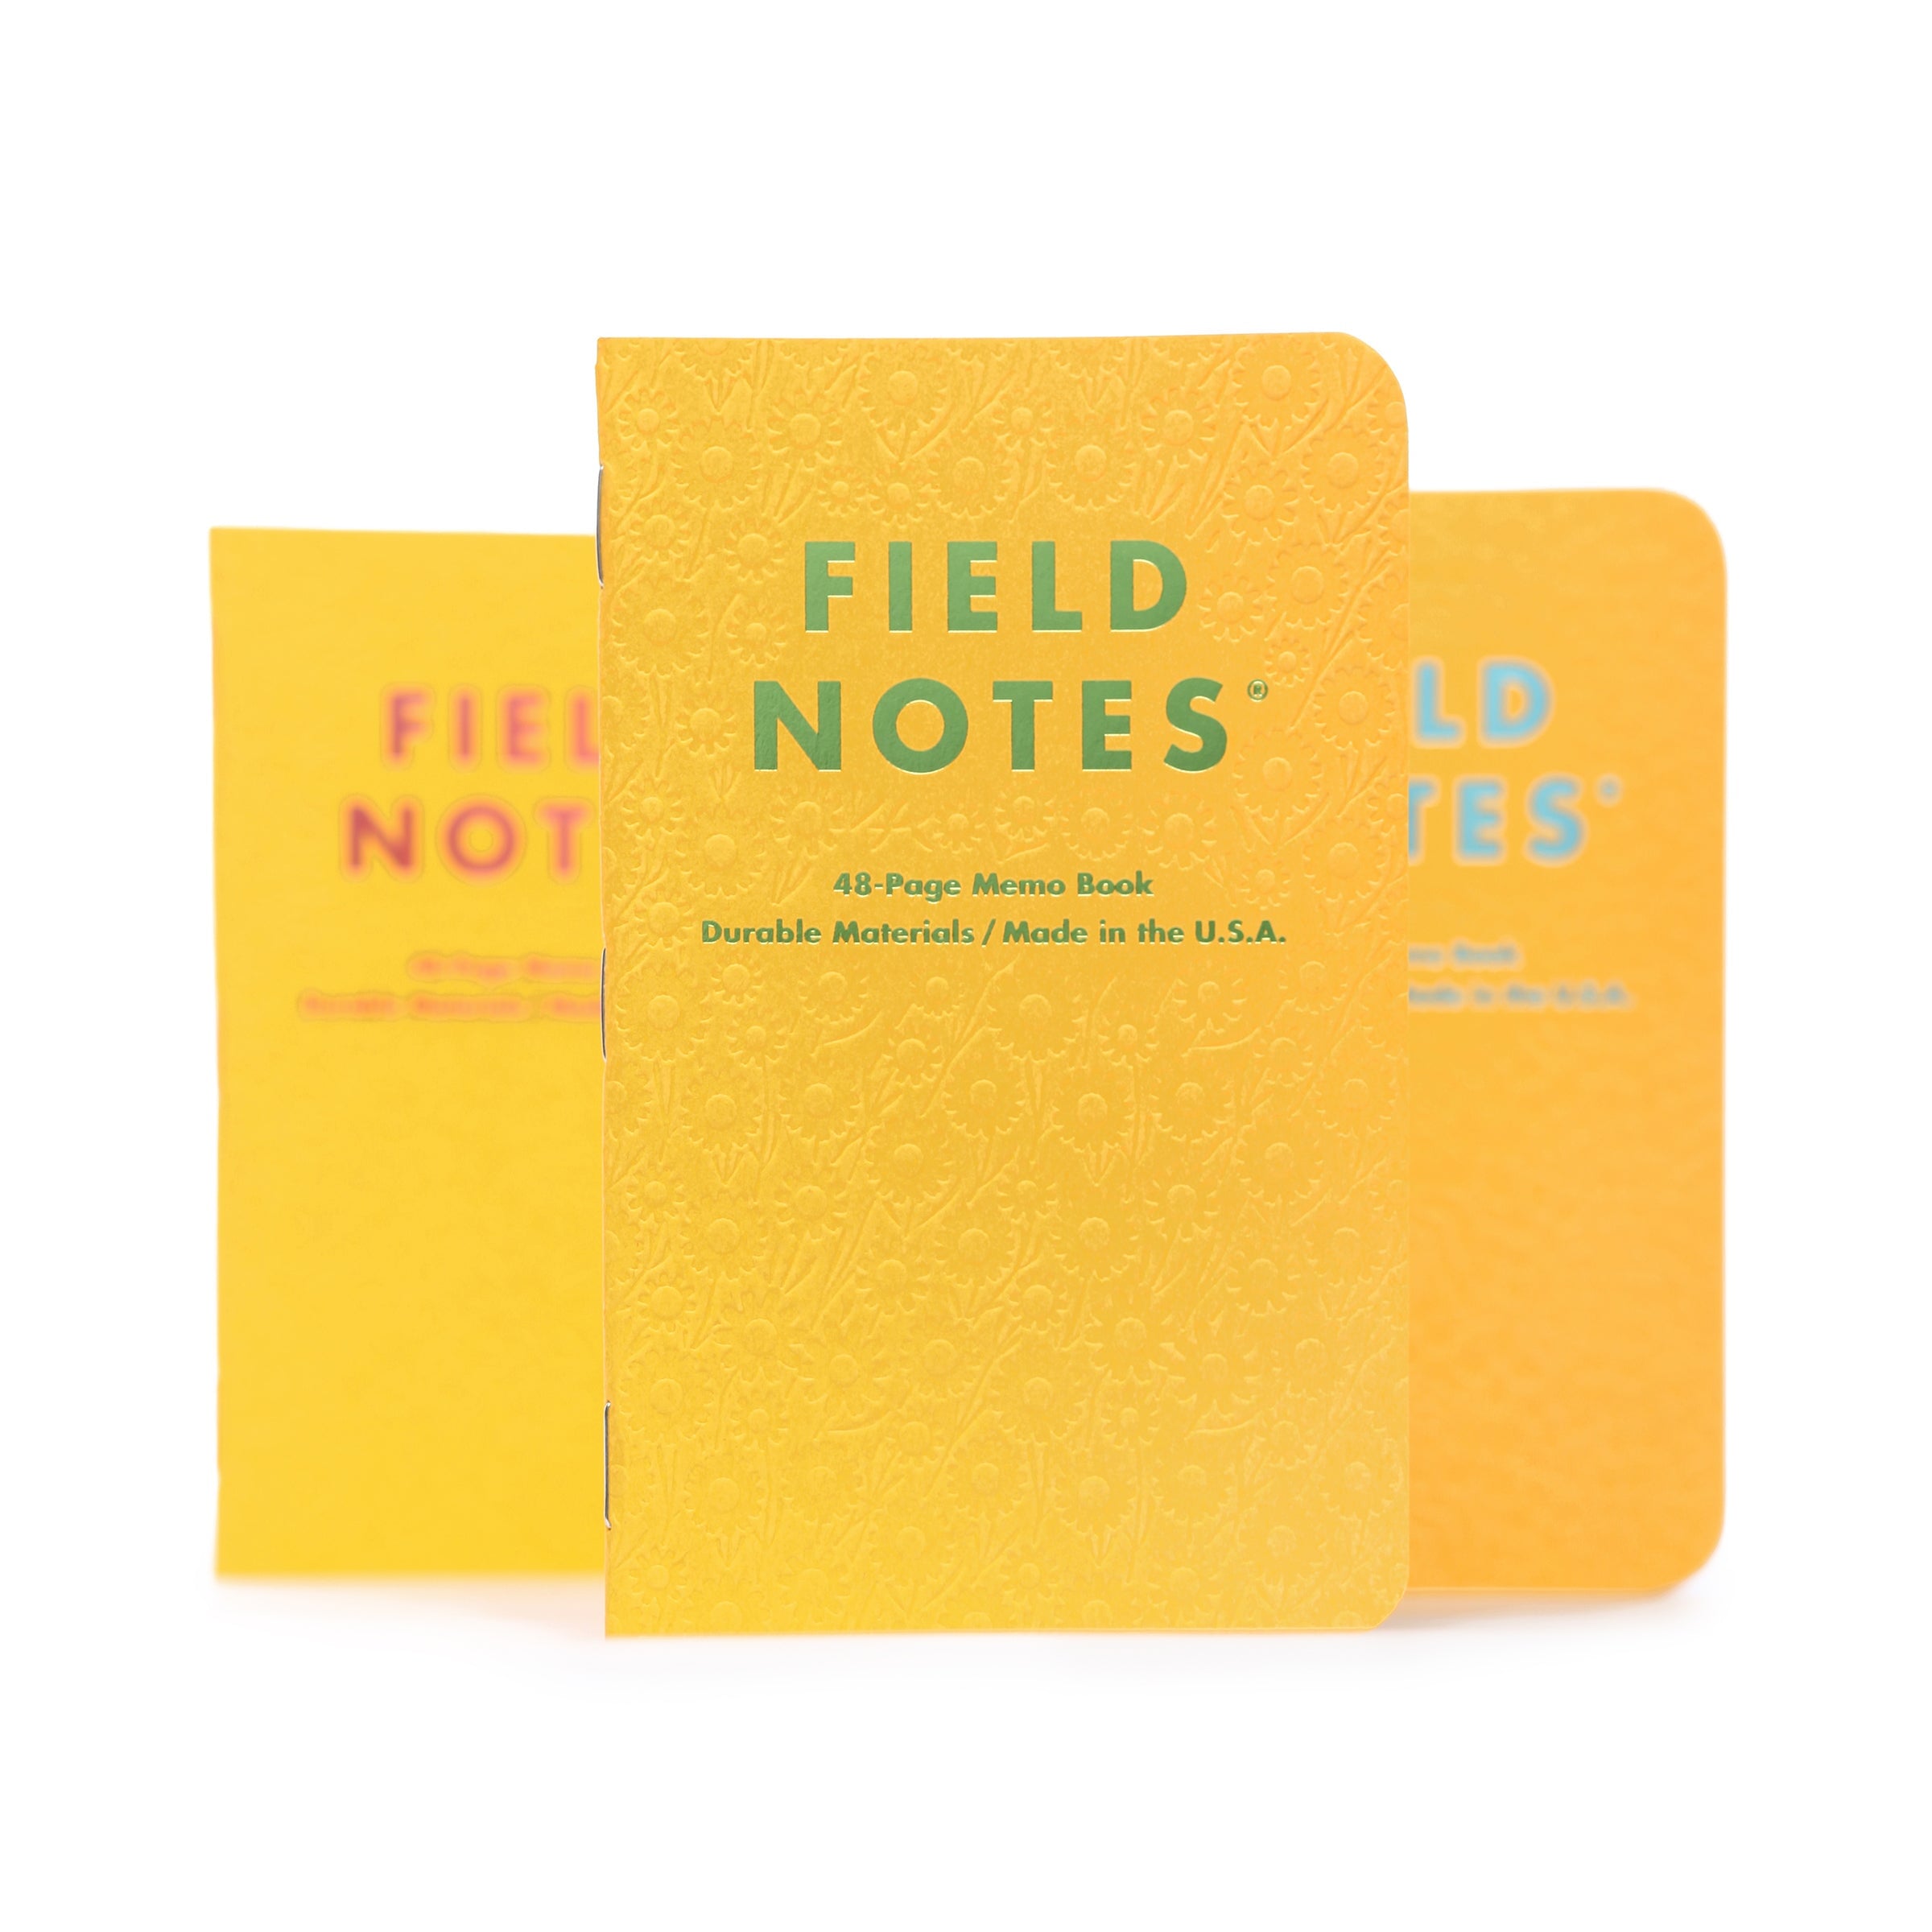 Field Notes "Signs Of Spring" Notizheft Notizhefte Field Notes 